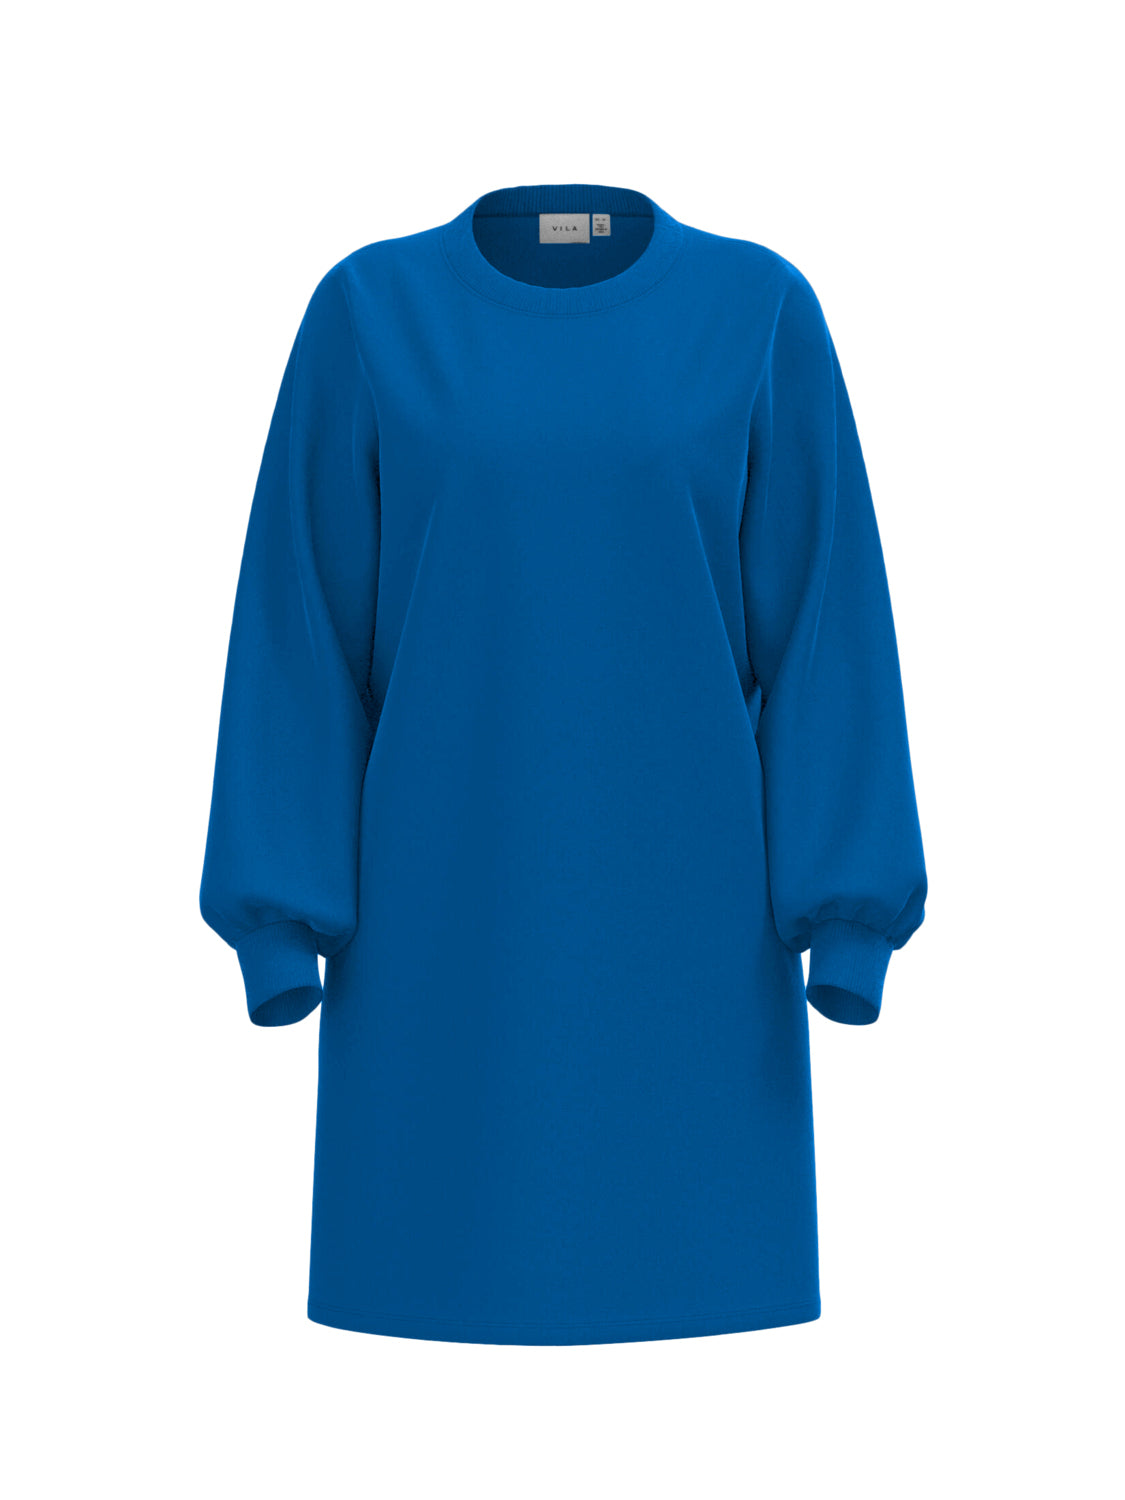 VISIF Dress - Lapis Blue